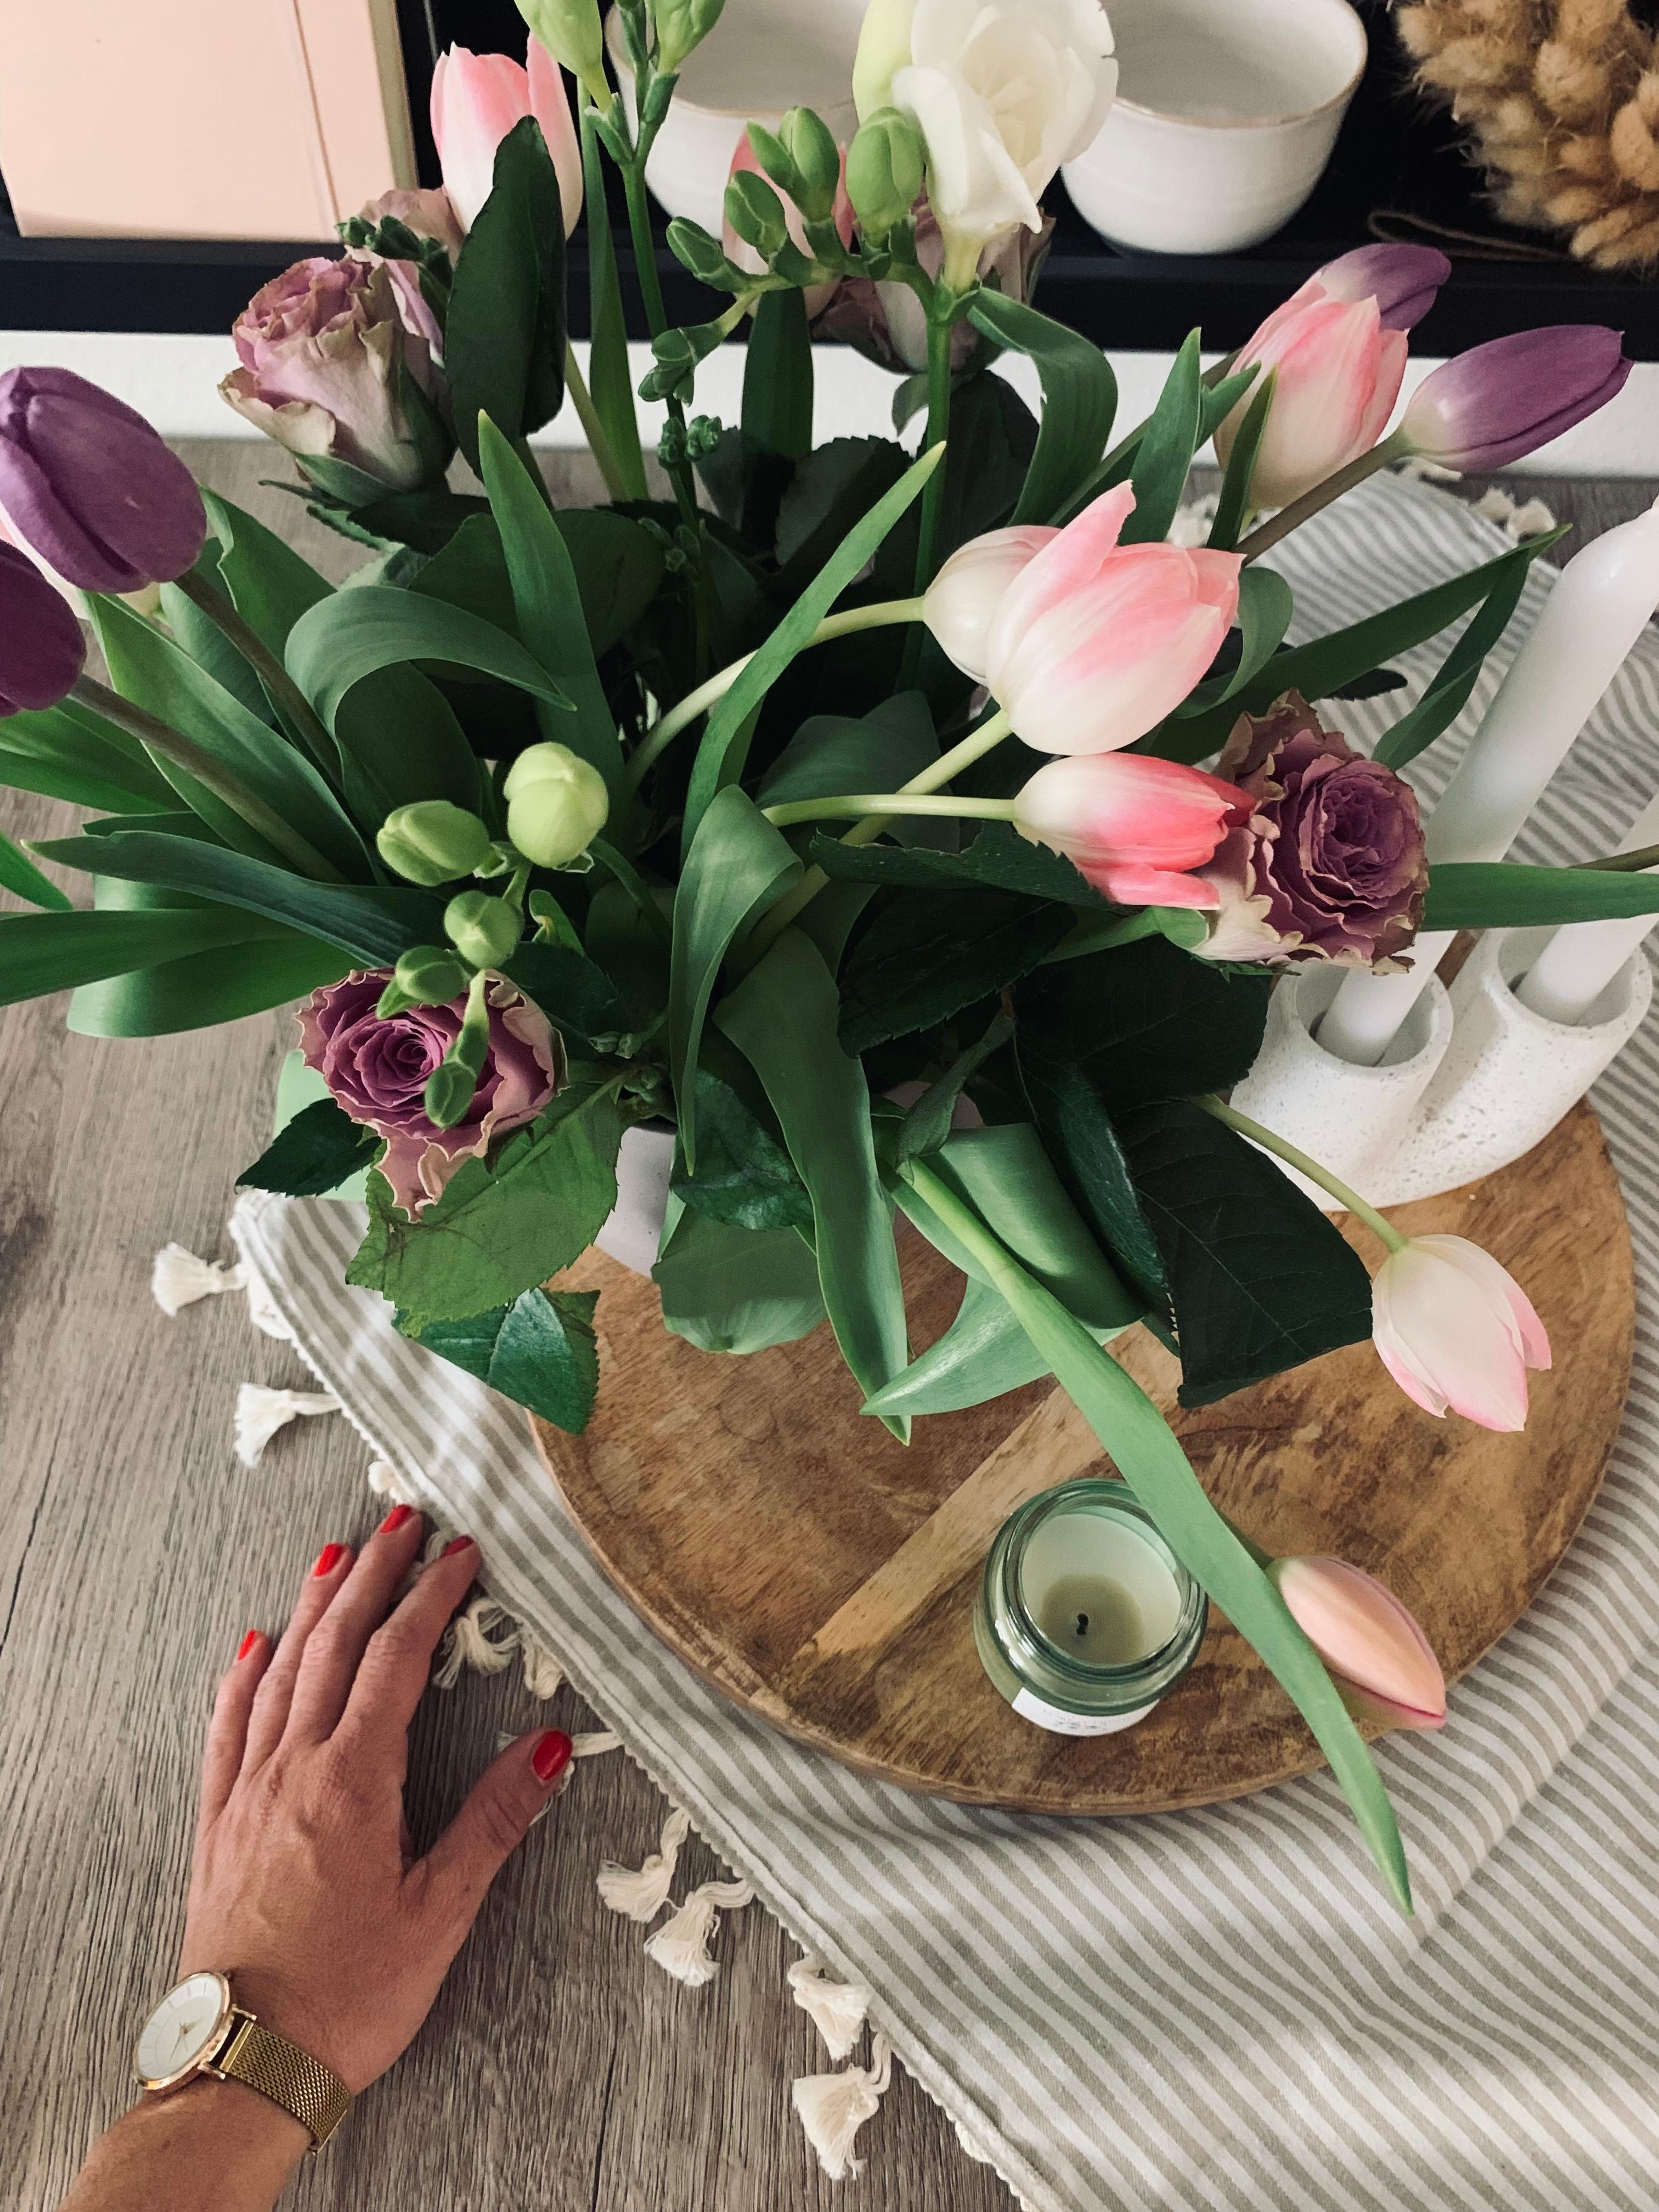 Frische Blumen zum Wochenende 🩶

#esstisch #holz #kerze #mitteldecke #flower #wandboard #küche 